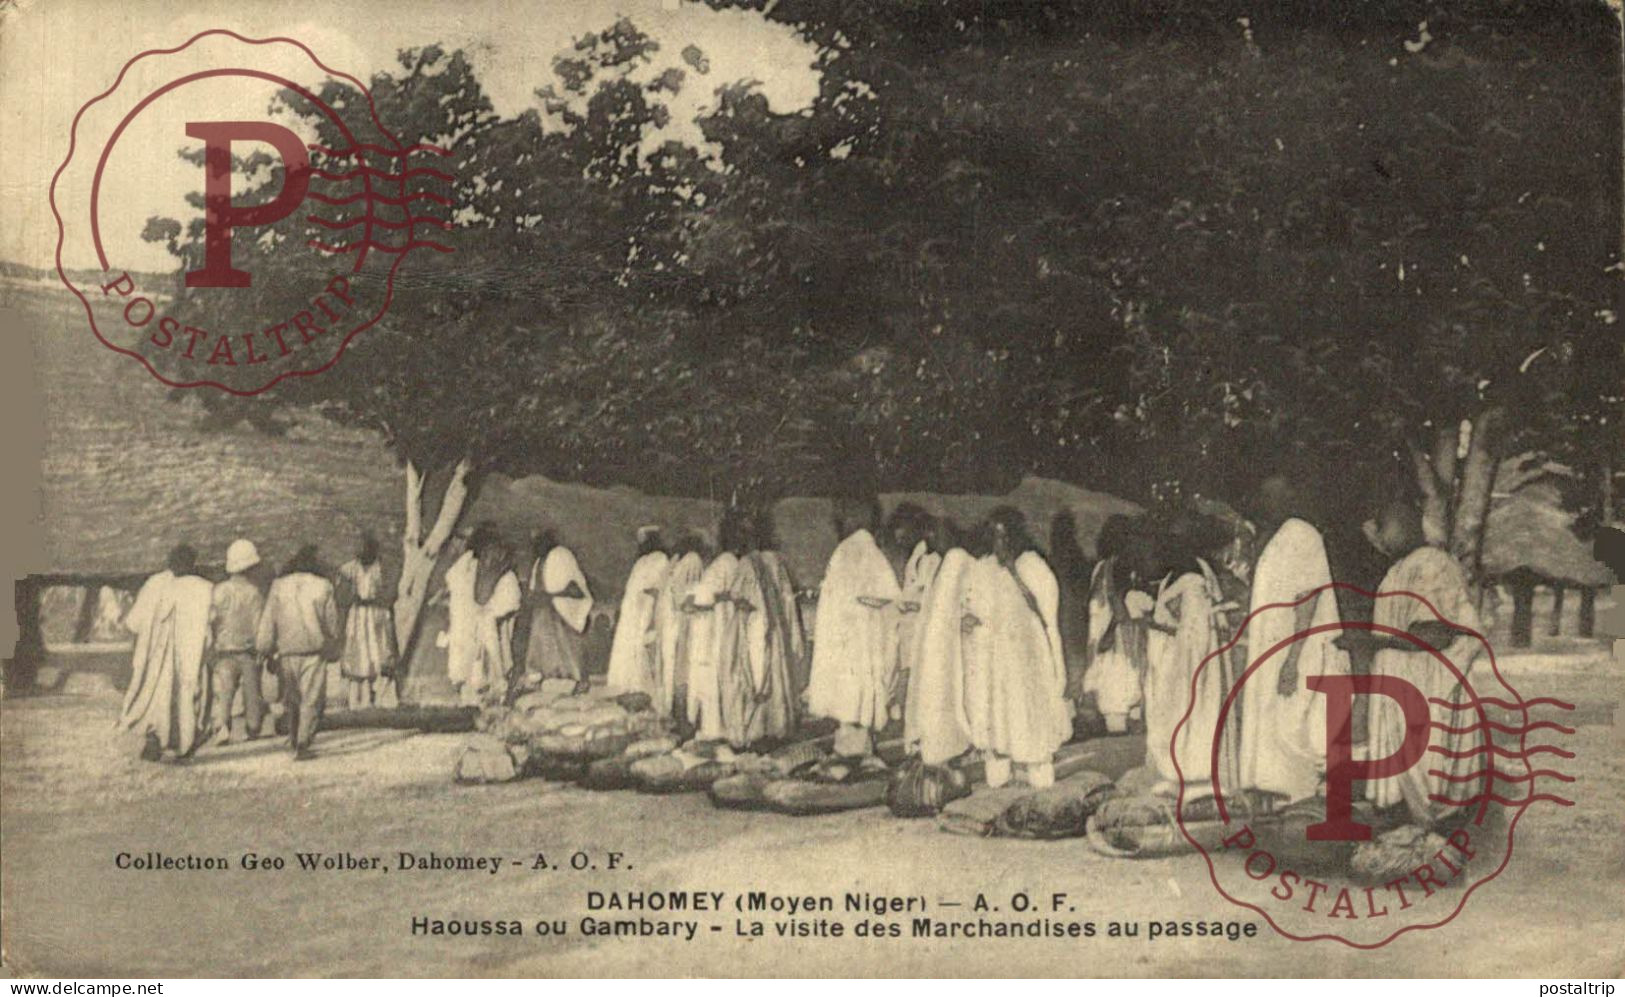 DAHOMEY. MOYEN NIGER. HAOUSSA OU GAMBARY. LA VISITE DES MARCHANDISES AU PASSAGE. - Dahomey